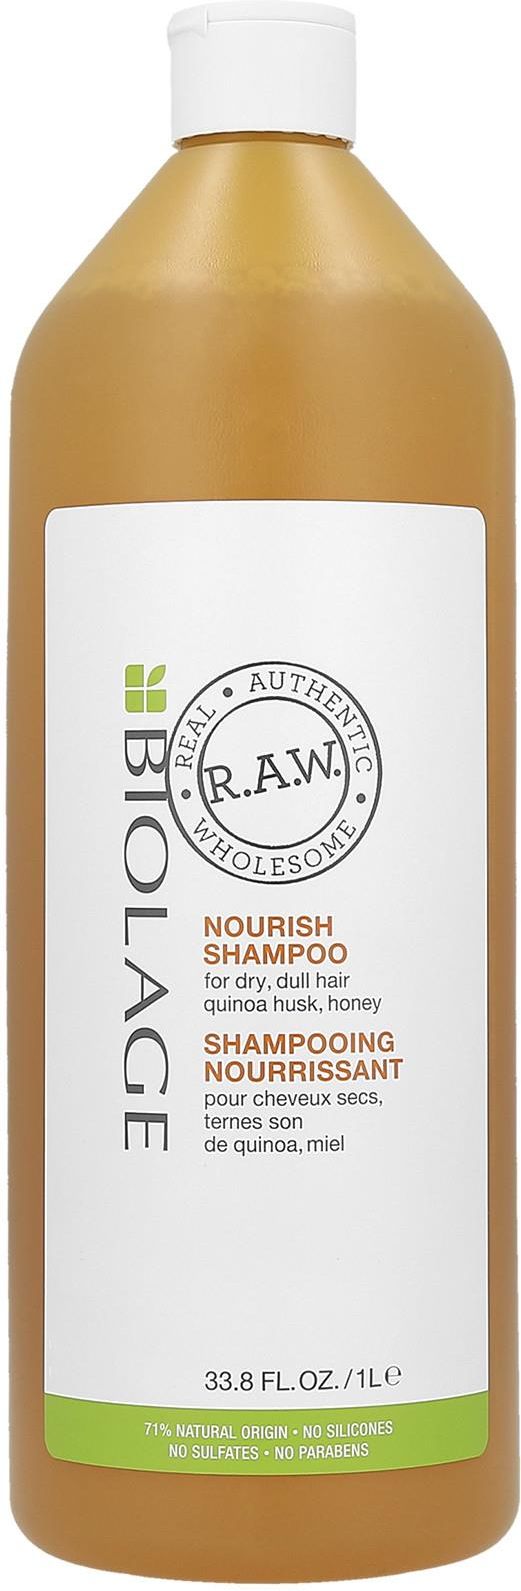 biolage raw nourish szampon nawilżający